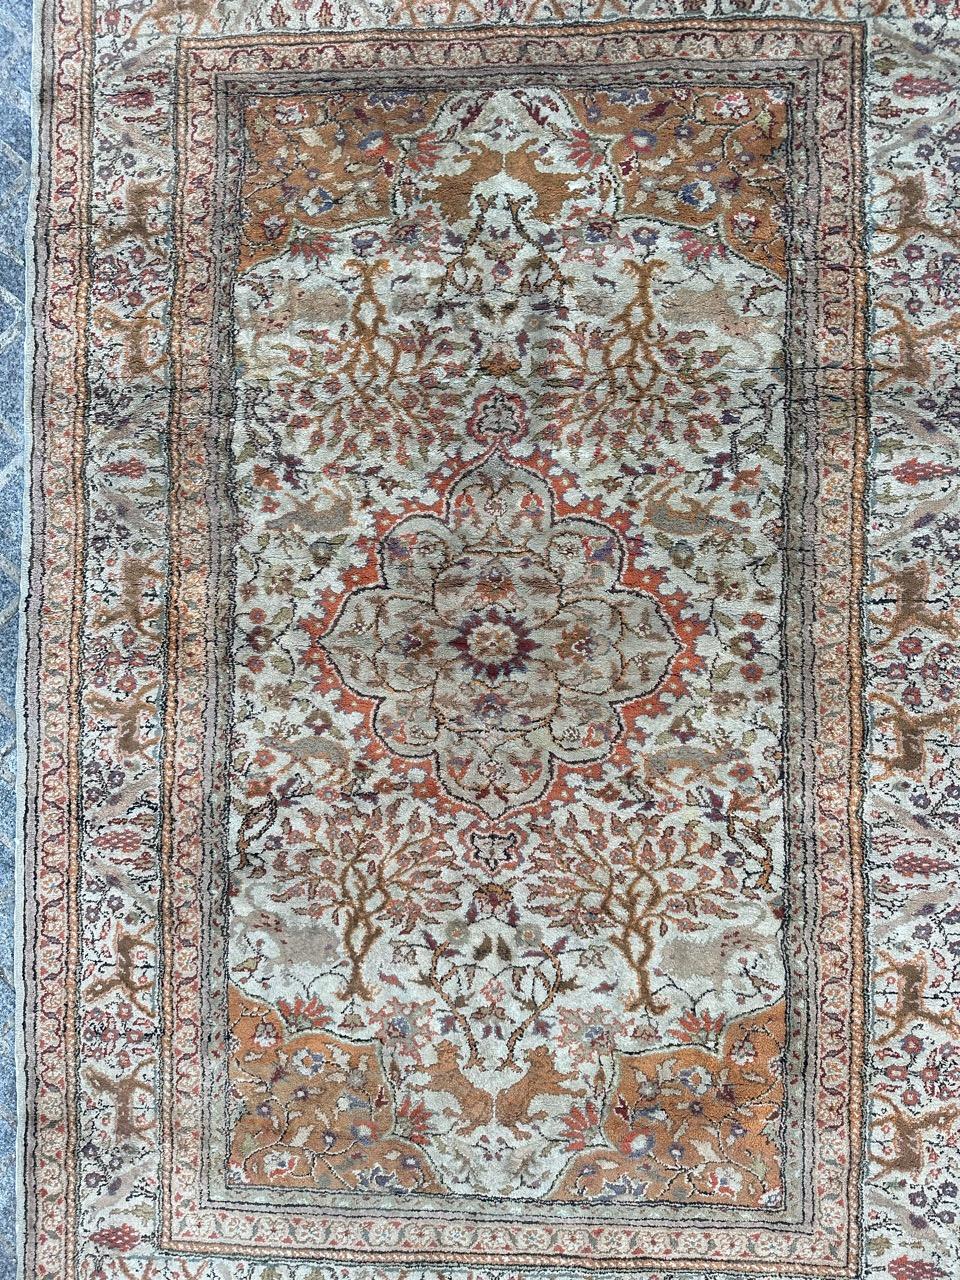 Tauchen Sie ein in die komplizierte Kunstfertigkeit dieses handgewebten Meisterwerks. Dieser exquisite türkische Teppich stammt aus dem Herzen von Kayseri und wurde in sorgfältiger Handarbeit aus einer Mischung von Seide und Baumwolle auf einem